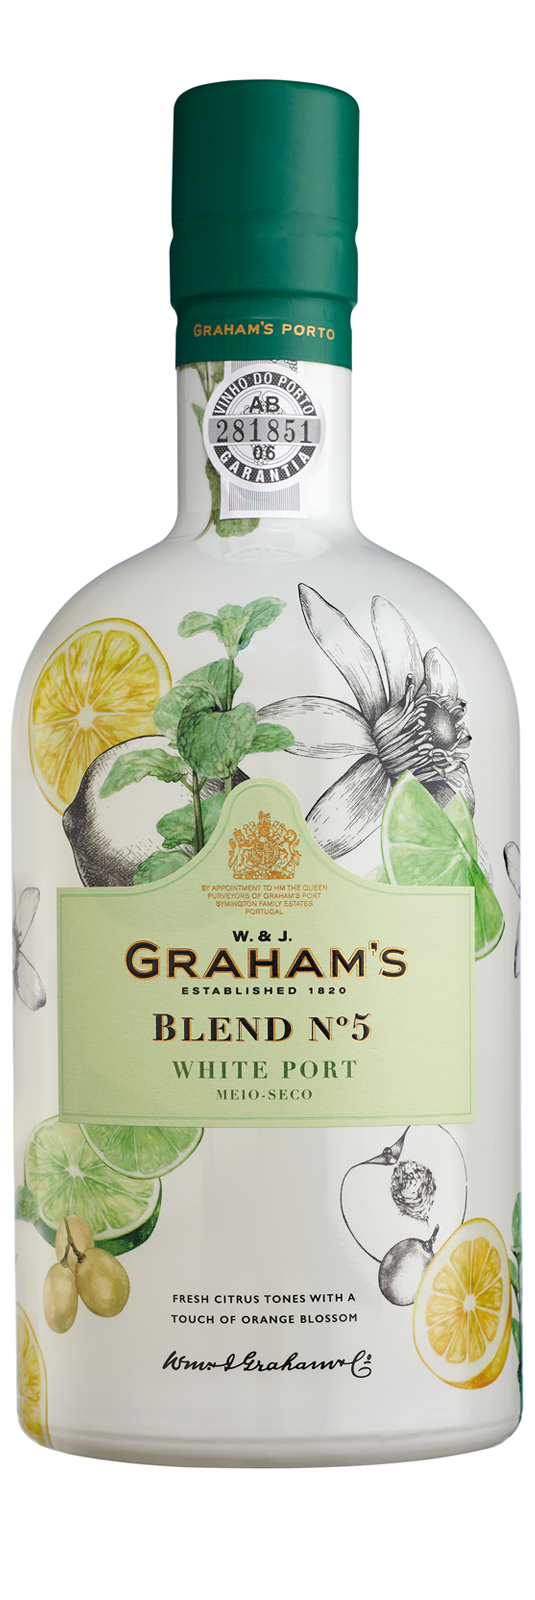 Graham's Blend N°5 White Port 19°